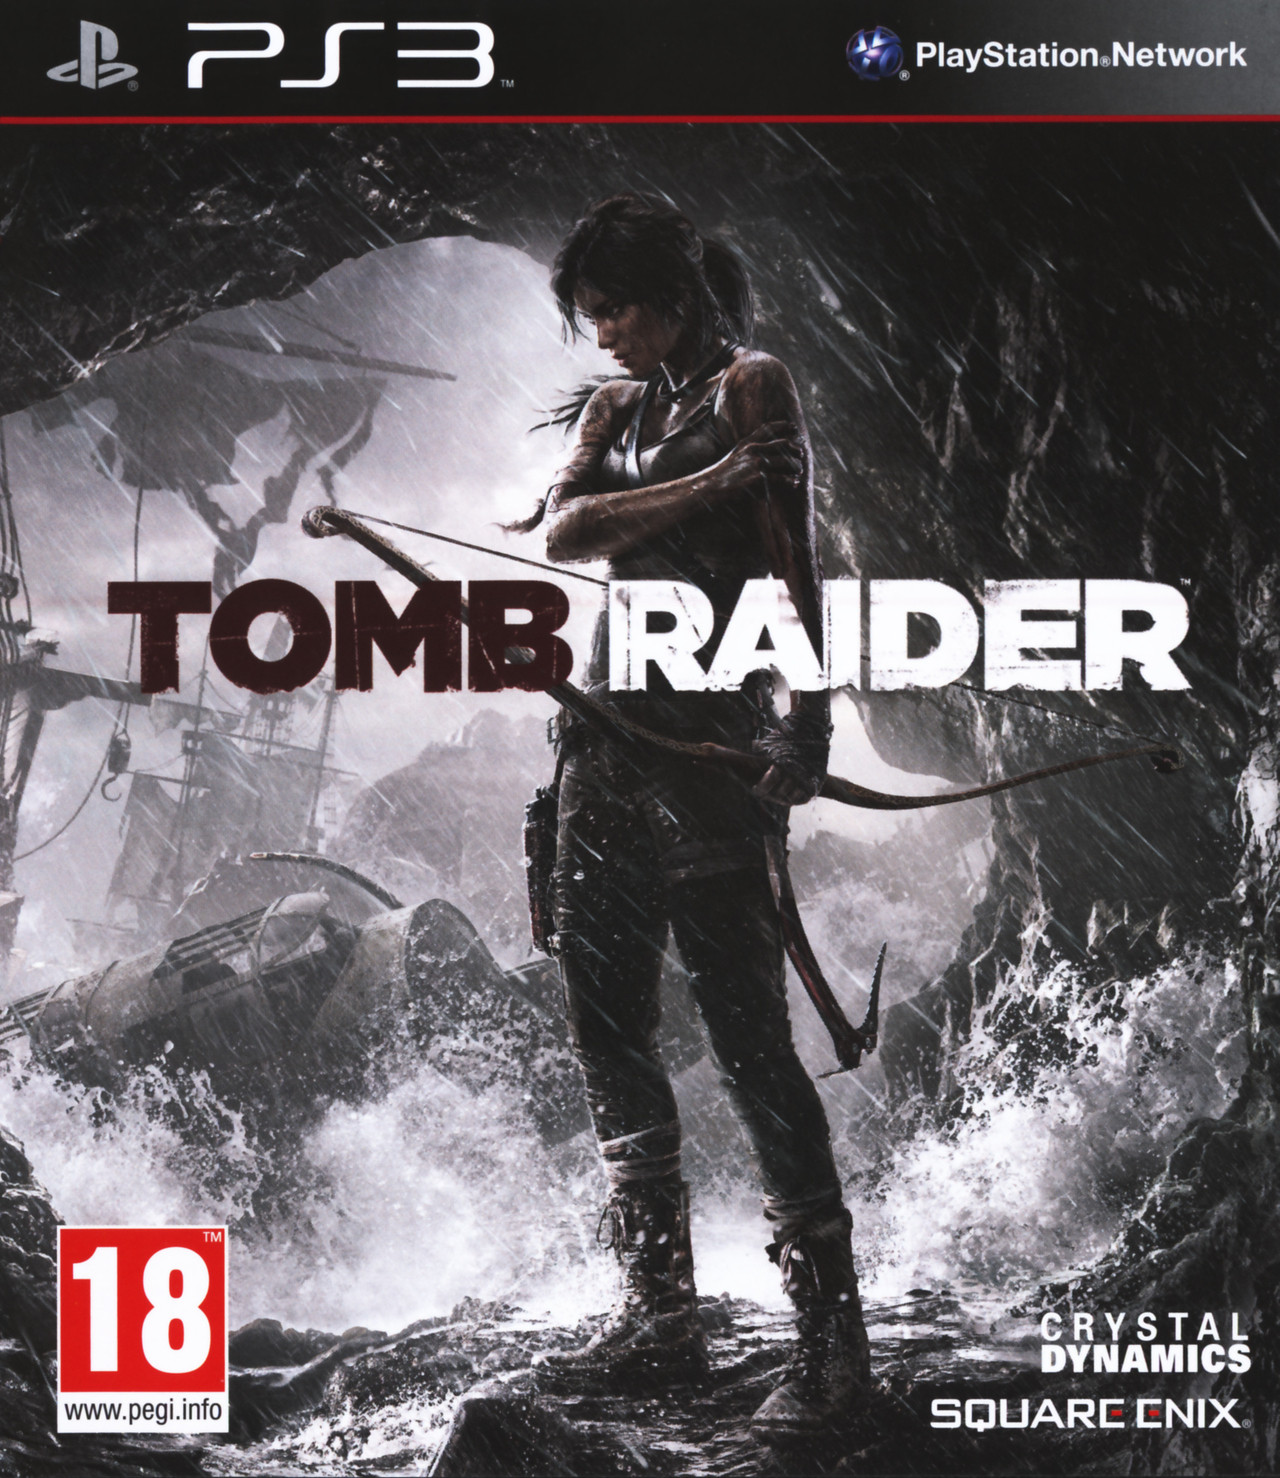 Vidéos du jeu Tomb Raider sur PS3 - Trailers, Gameplay - jeuxvideo.com